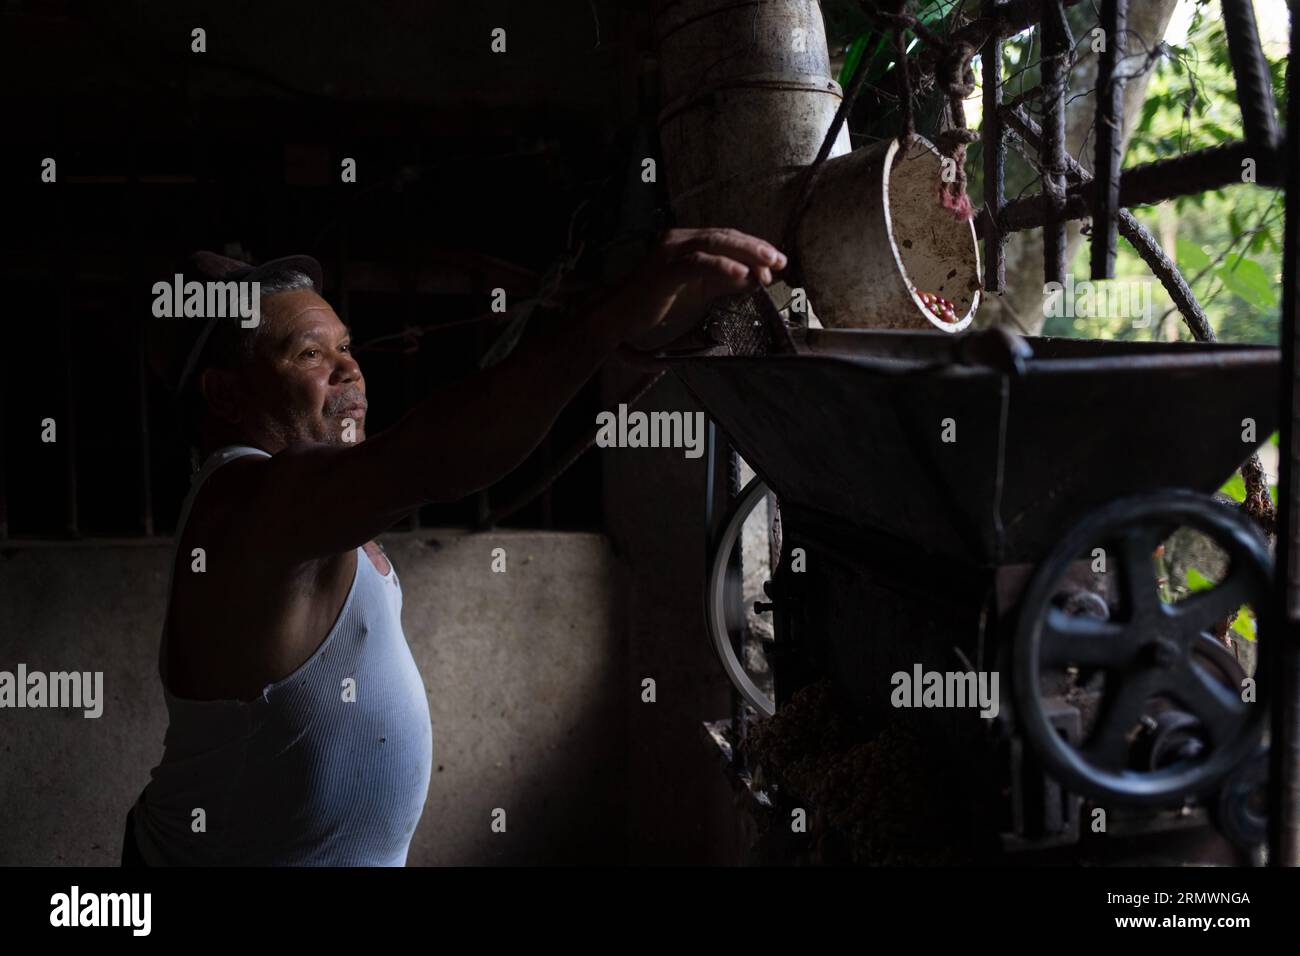 (141106) -- SAN CRISTOBAL, -- une image prise le 29 octobre 2014 montre un ouvrier journalier pulpant des grains de café dans une ferme biologique gérée par l'Association des producteurs de café la Esperanza (ASOCAES, pour son acronyme en espagnol) de la municipalité de Los Cacaos, à San Cristobal, en République dominicaine. La vie de 10 pour cent de la population dominicaine tourne autour de la production de café. Fran Afonso) RÉPUBLIQUE DOMINICAINE-SAN CRISTOBAL-AGRICULTURE-COFFEE e FRANxAFONSO PUBLICATIONxNOTxINxCHN San Cristobal image prise LE 29 2014 octobre montre un ouvrier de jour grains de café À la ferme biologique gérée par la Esperanza Association of Banque D'Images